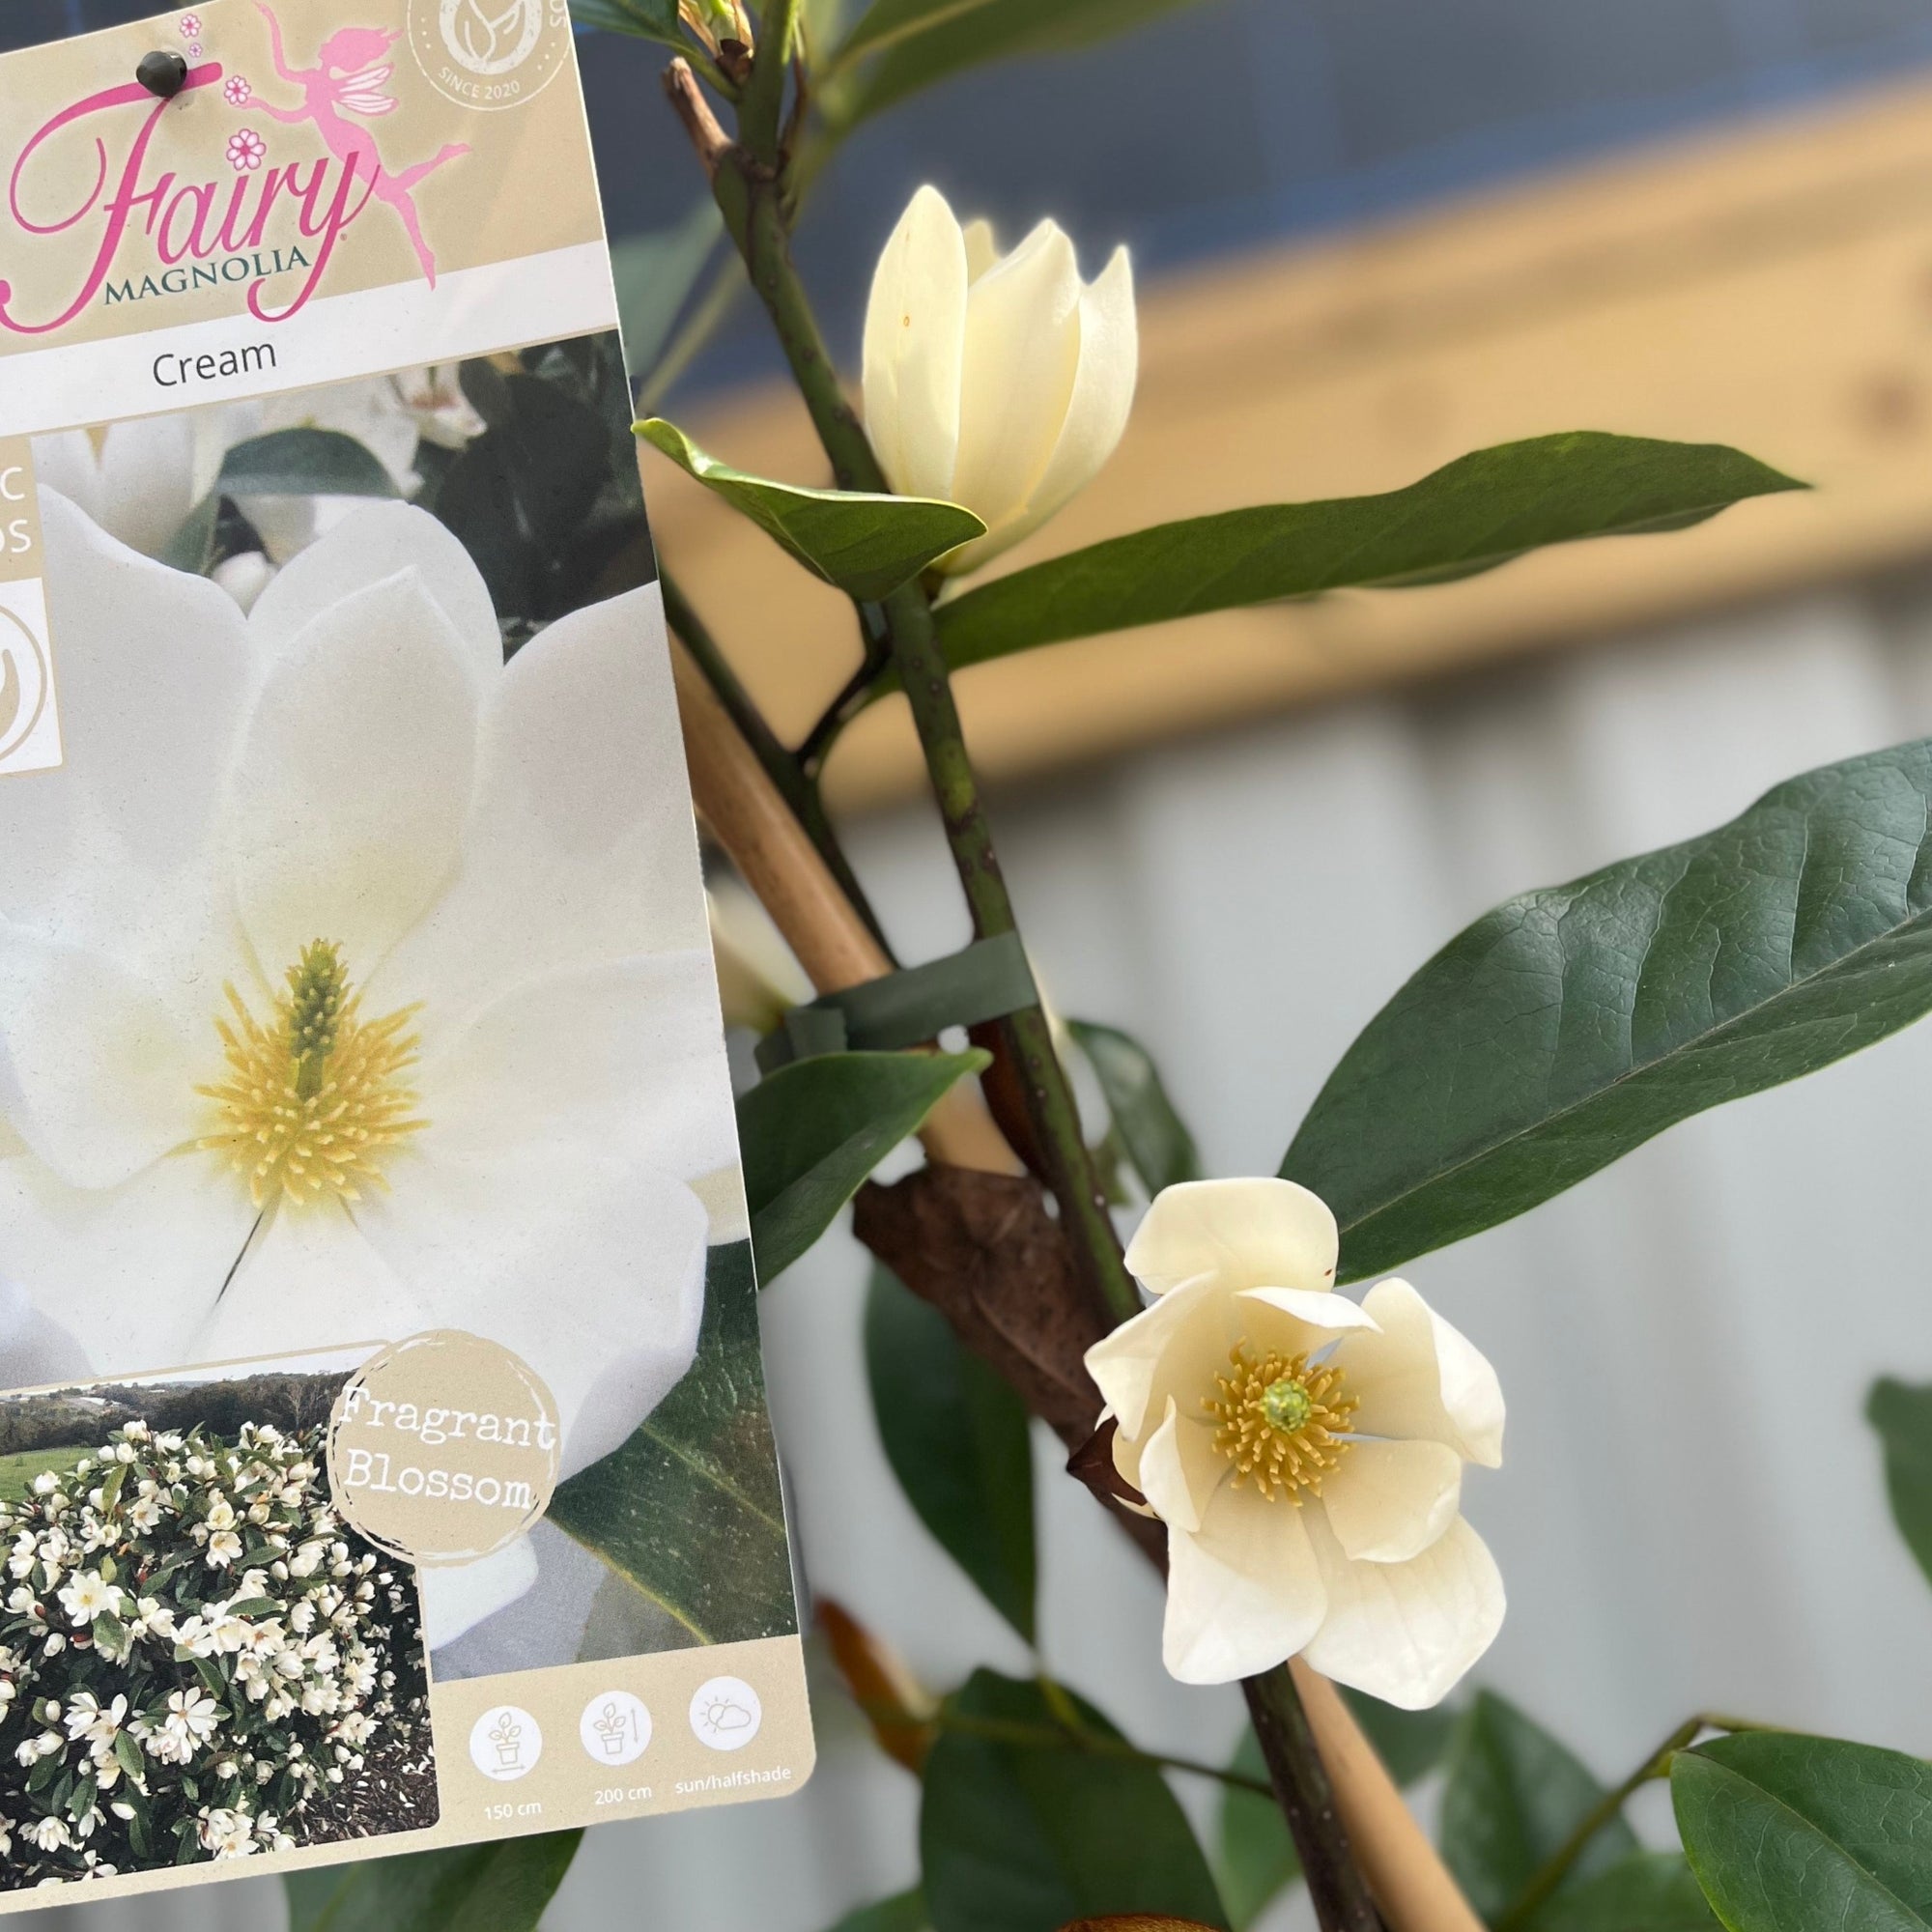 Evergreen Magnolia | Fairy Magnolia Cream | 90-100cm